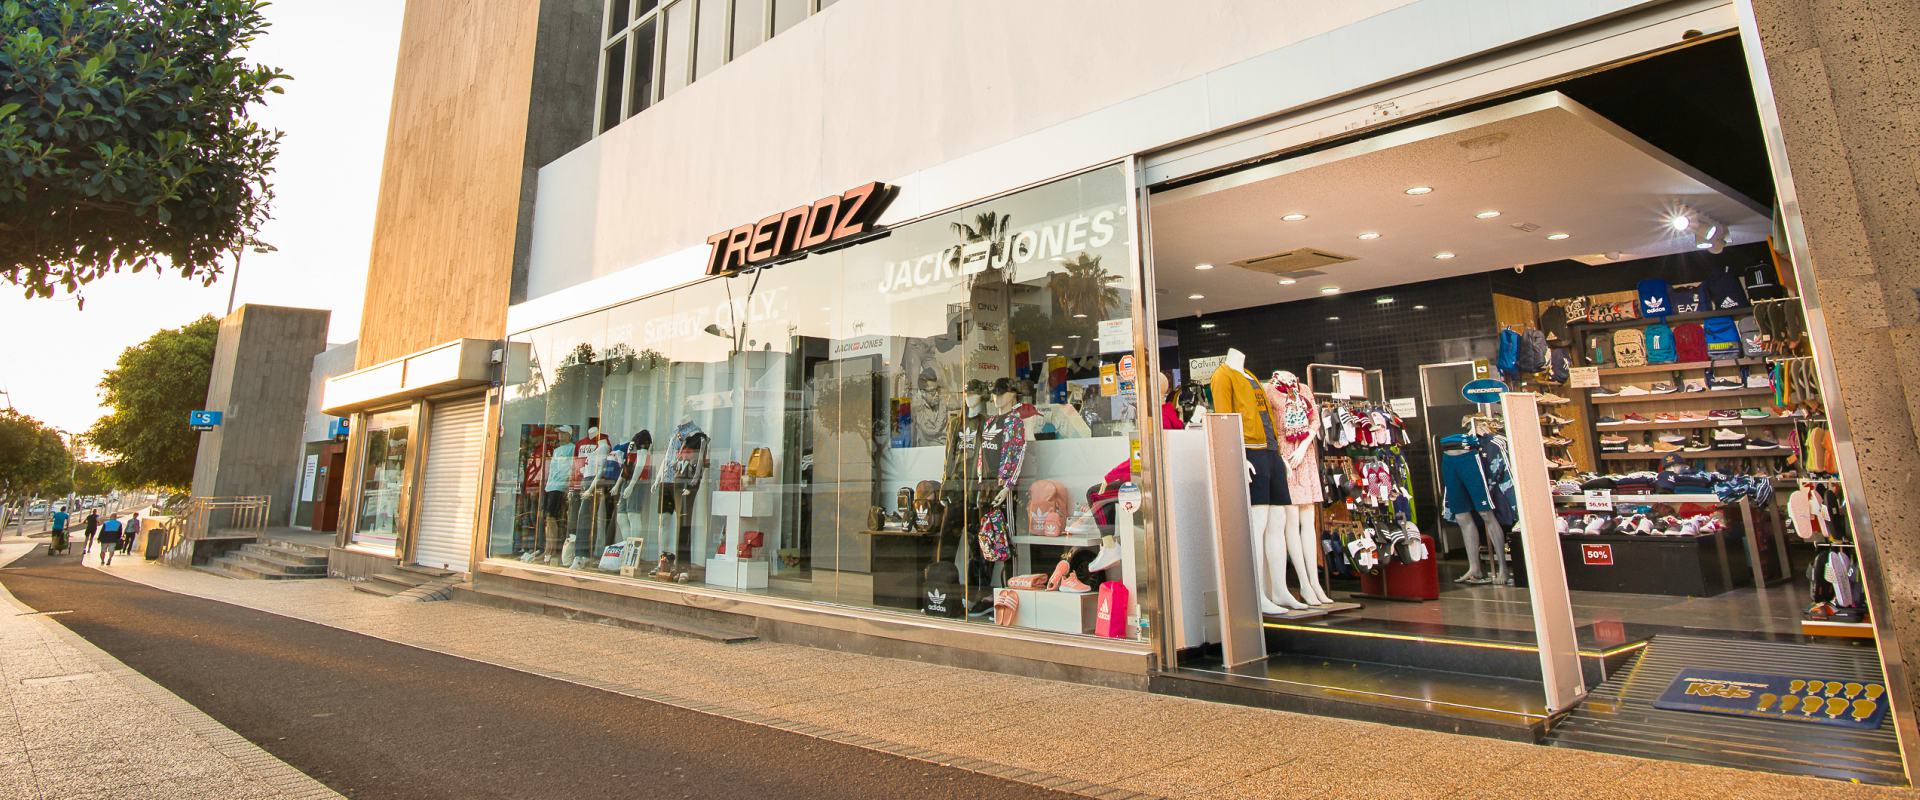 Trendz Boutique Avenida de las Playas, Puerto del Carmen. Una de las mejores tiendas de ropa, calzado, bolsos, ba&ntilde;adores y complementos aut&eacute;nticos en Lanzarote.